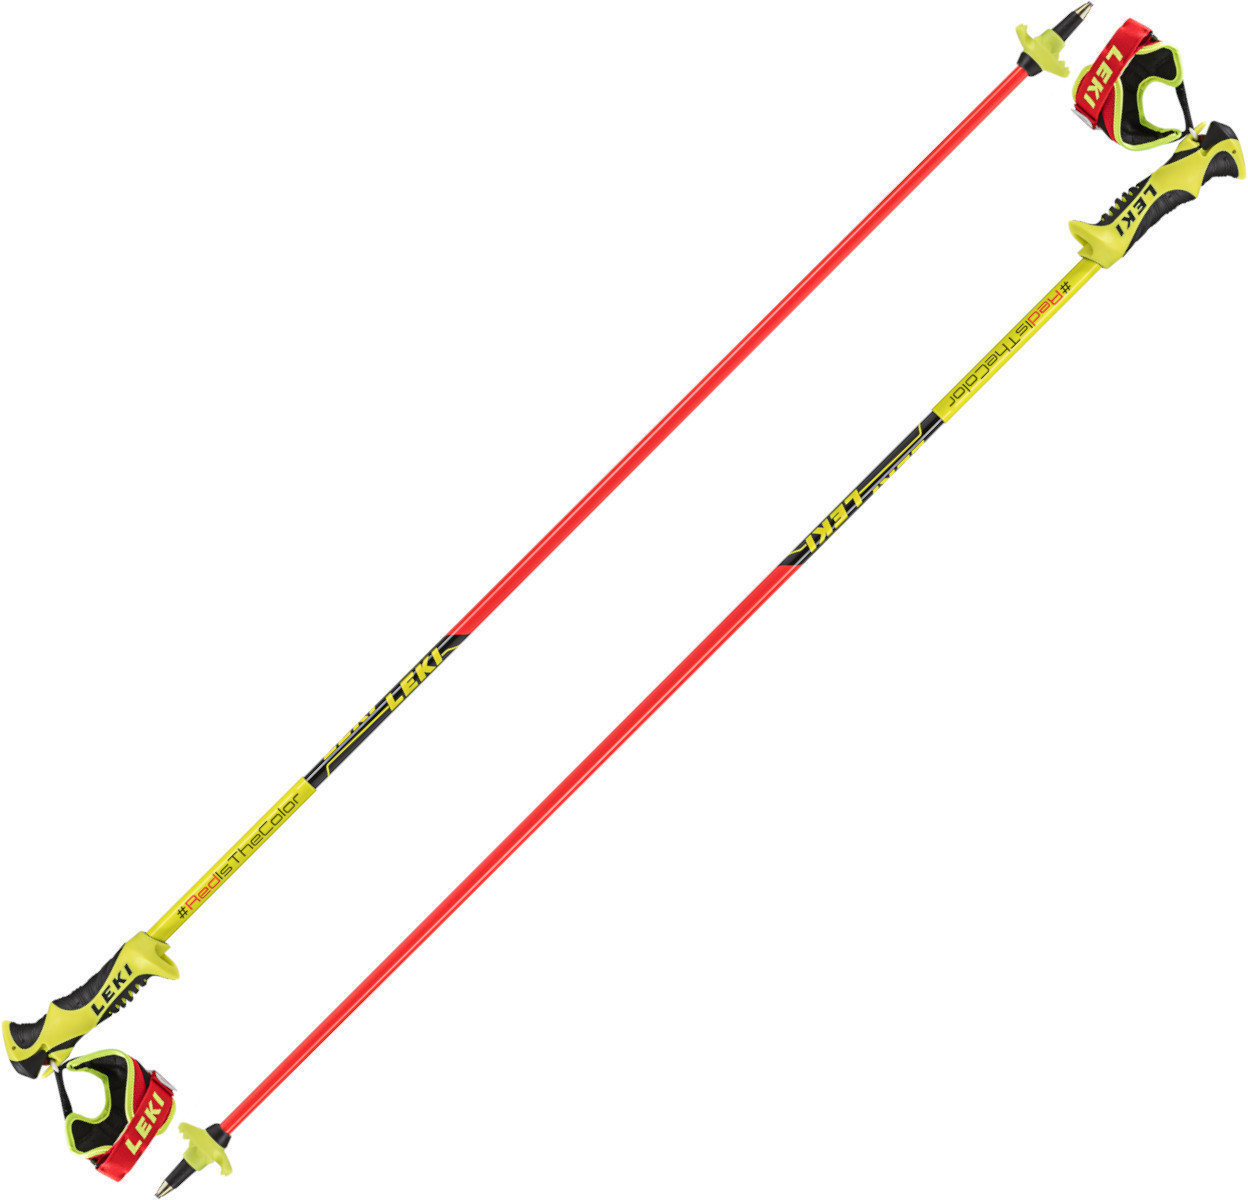 Bastões de esqui Leki Worldcup Racing Comp JR Neonred/Neonyellow/Black 115 cm Bastões de esqui